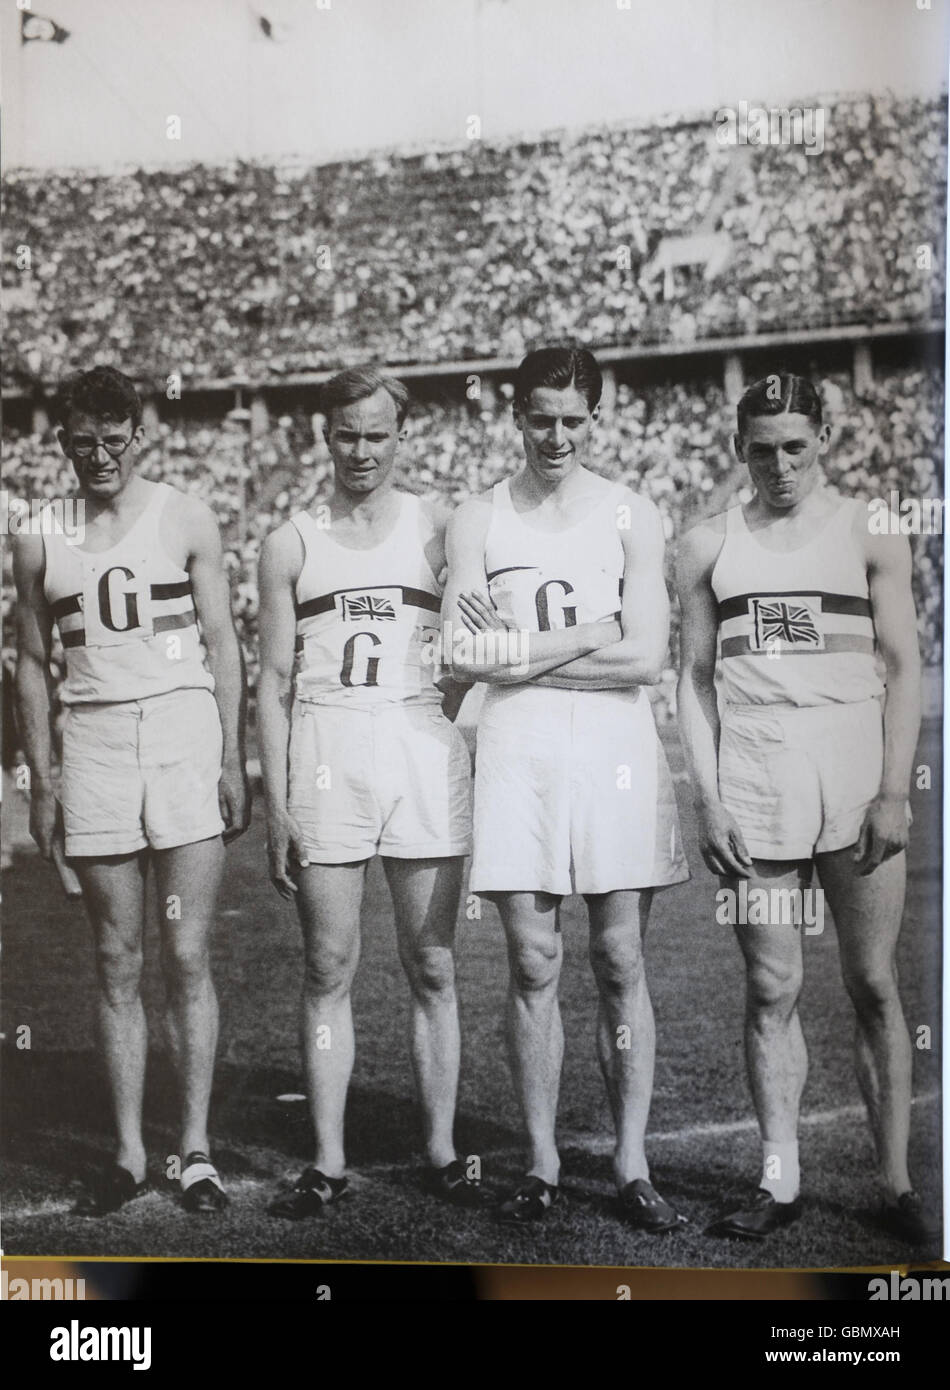 Olimpiadi - il più antico rampino olimpico della Gran Bretagna celebra il suo centesimo compleanno - Bushey House. Un'immagine raccolta che mostra Godfrey Rampling (seconda destra) in competizione nei Giochi di Berlino del 1936. Foto Stock